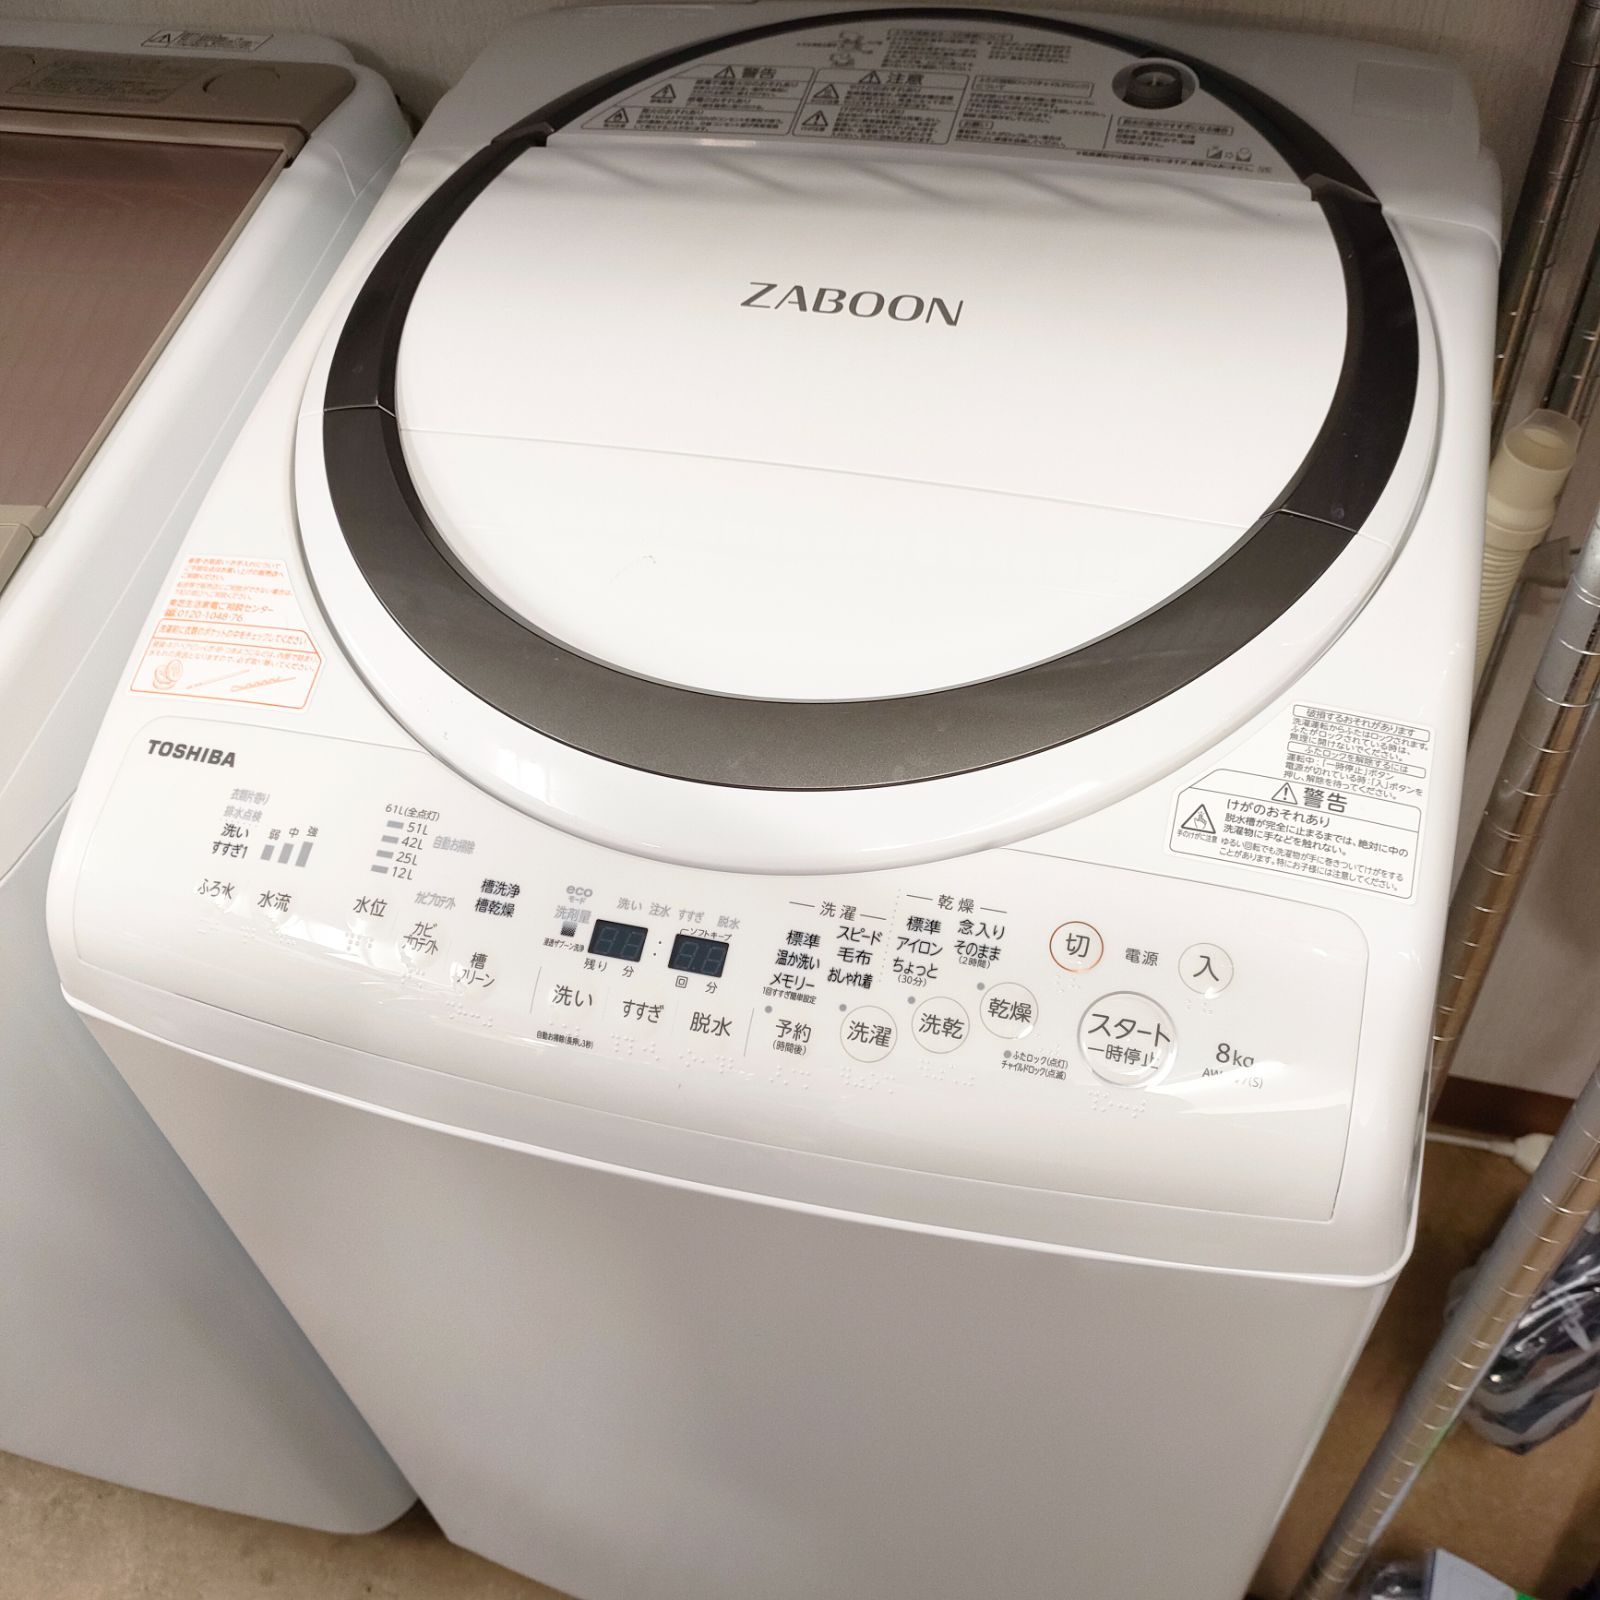 東芝 AW-8V7(S) 洗濯乾燥機 「ZABOON(ザブーン)」 - 洗濯機